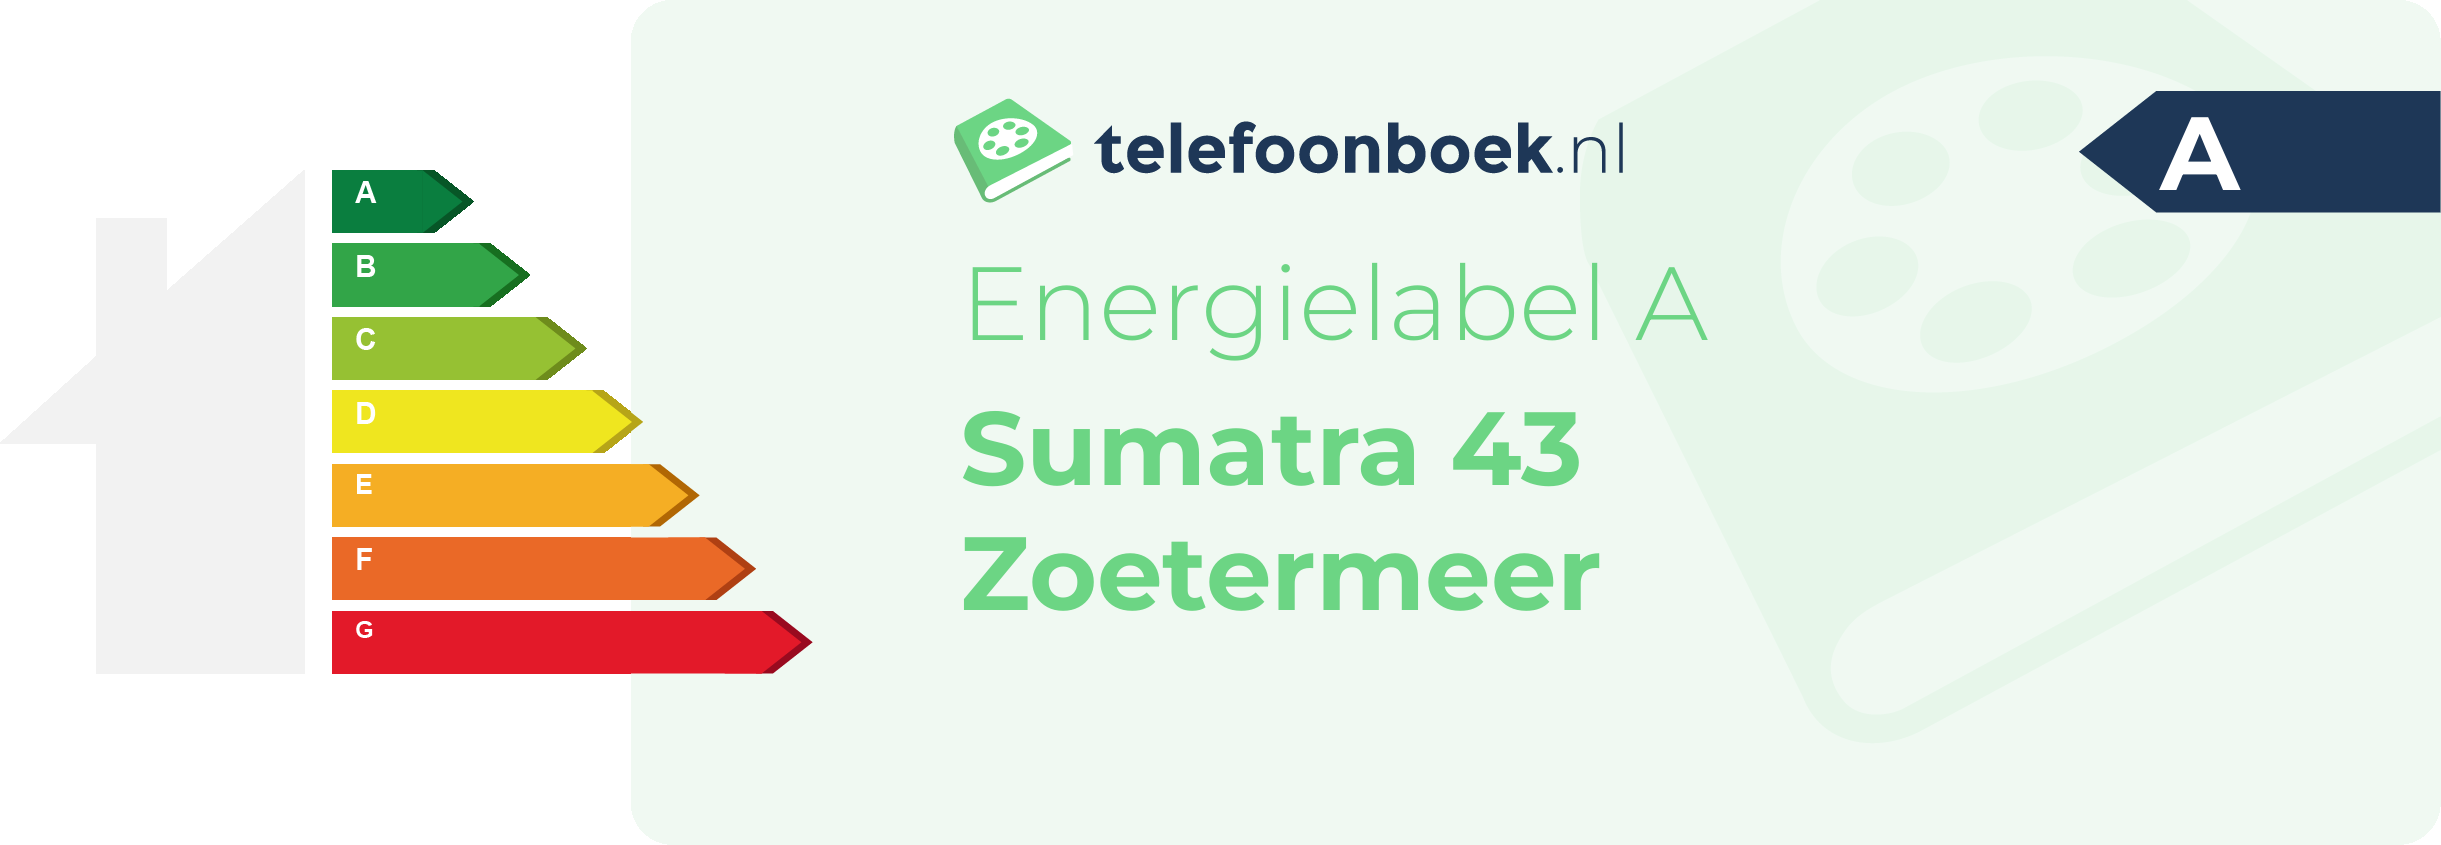 Energielabel Sumatra 43 Zoetermeer